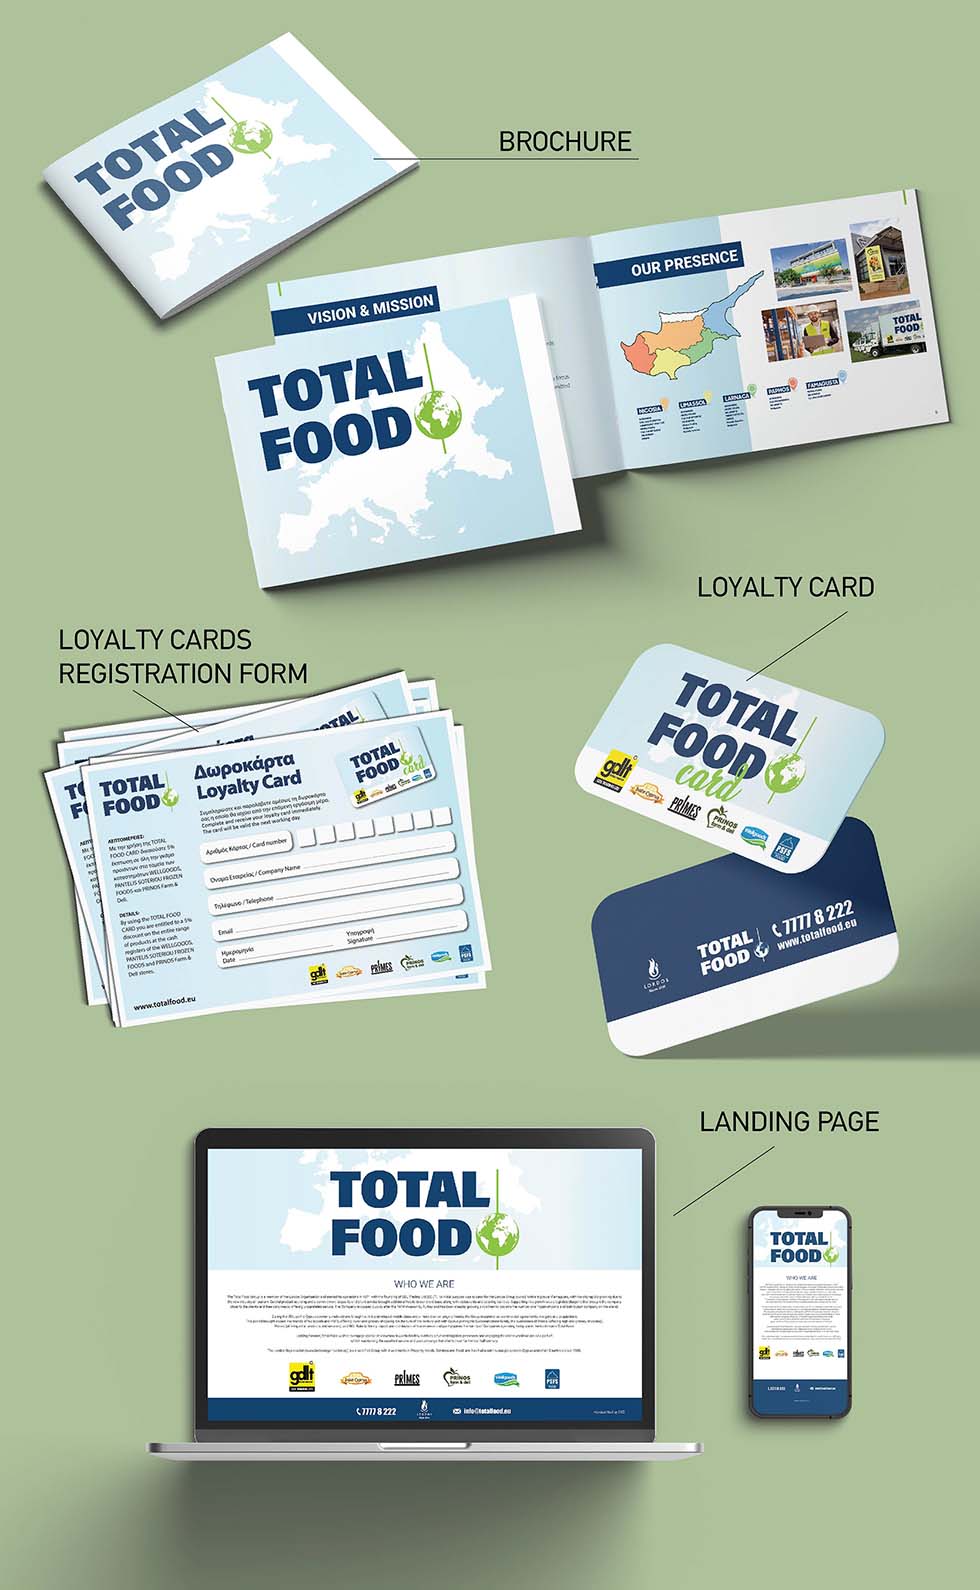 Total Food case studies - Brochure 1